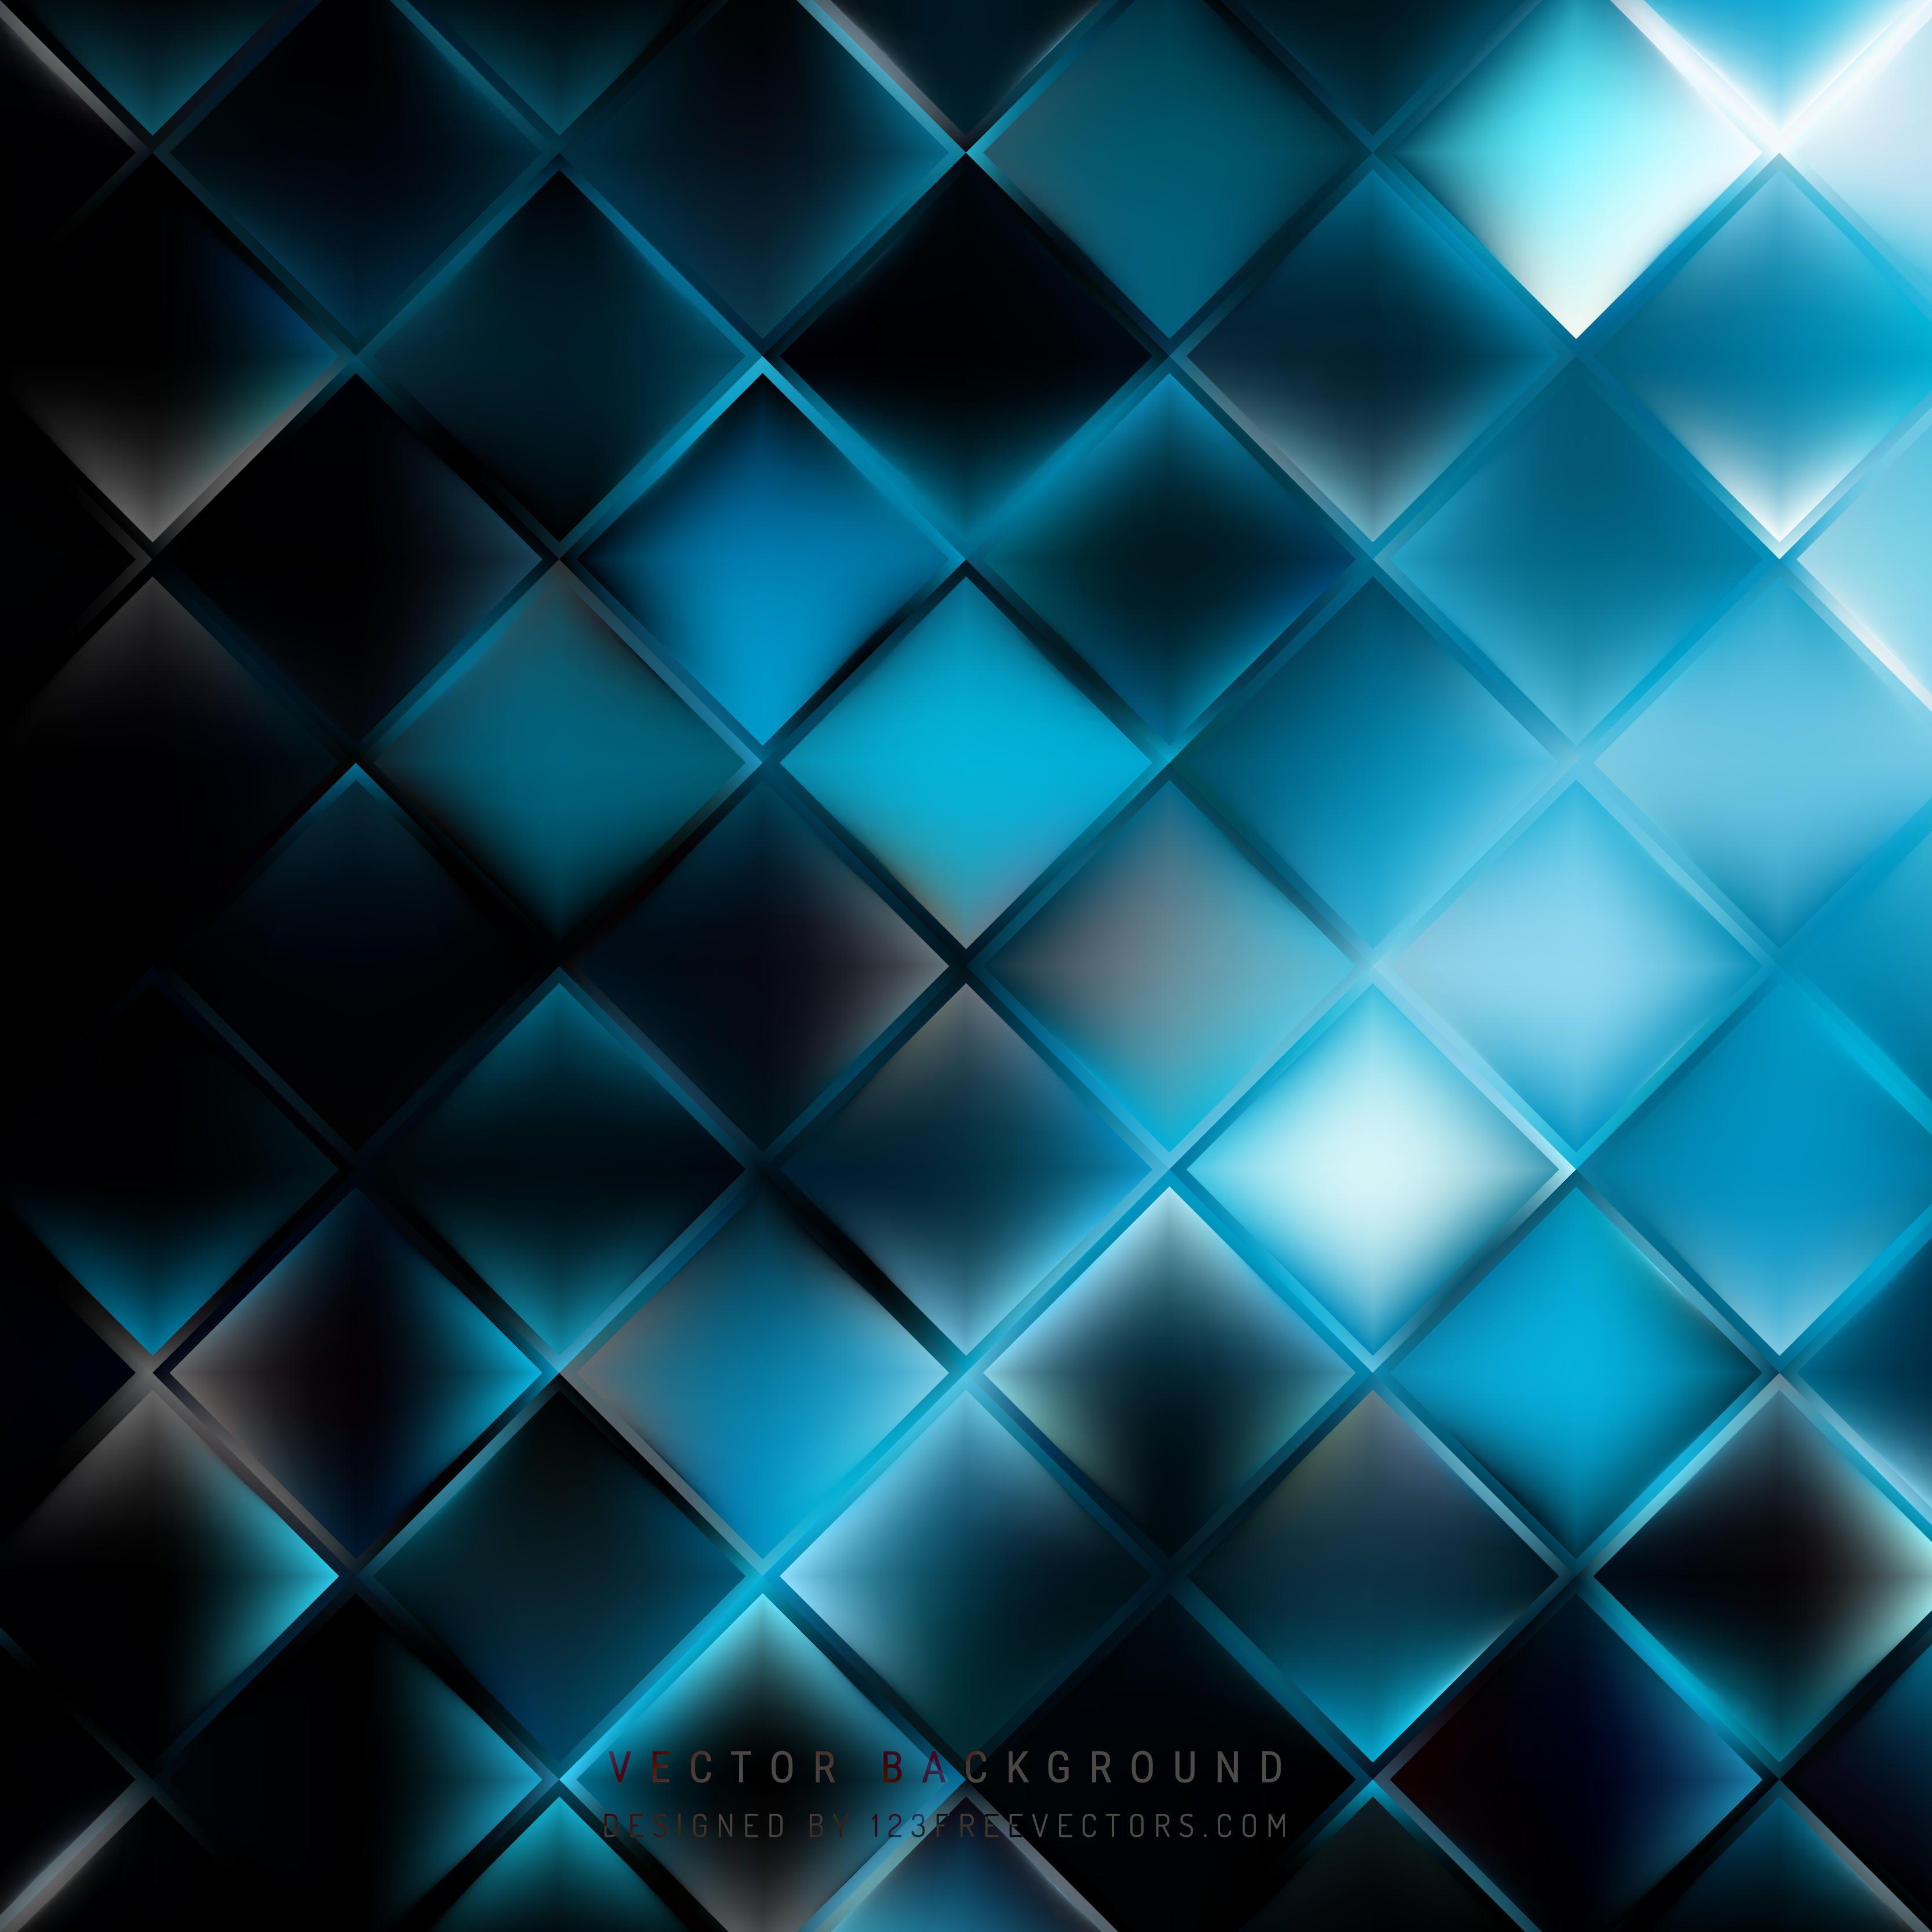 Dark Blue Background Vectors. Download Free Vector Art